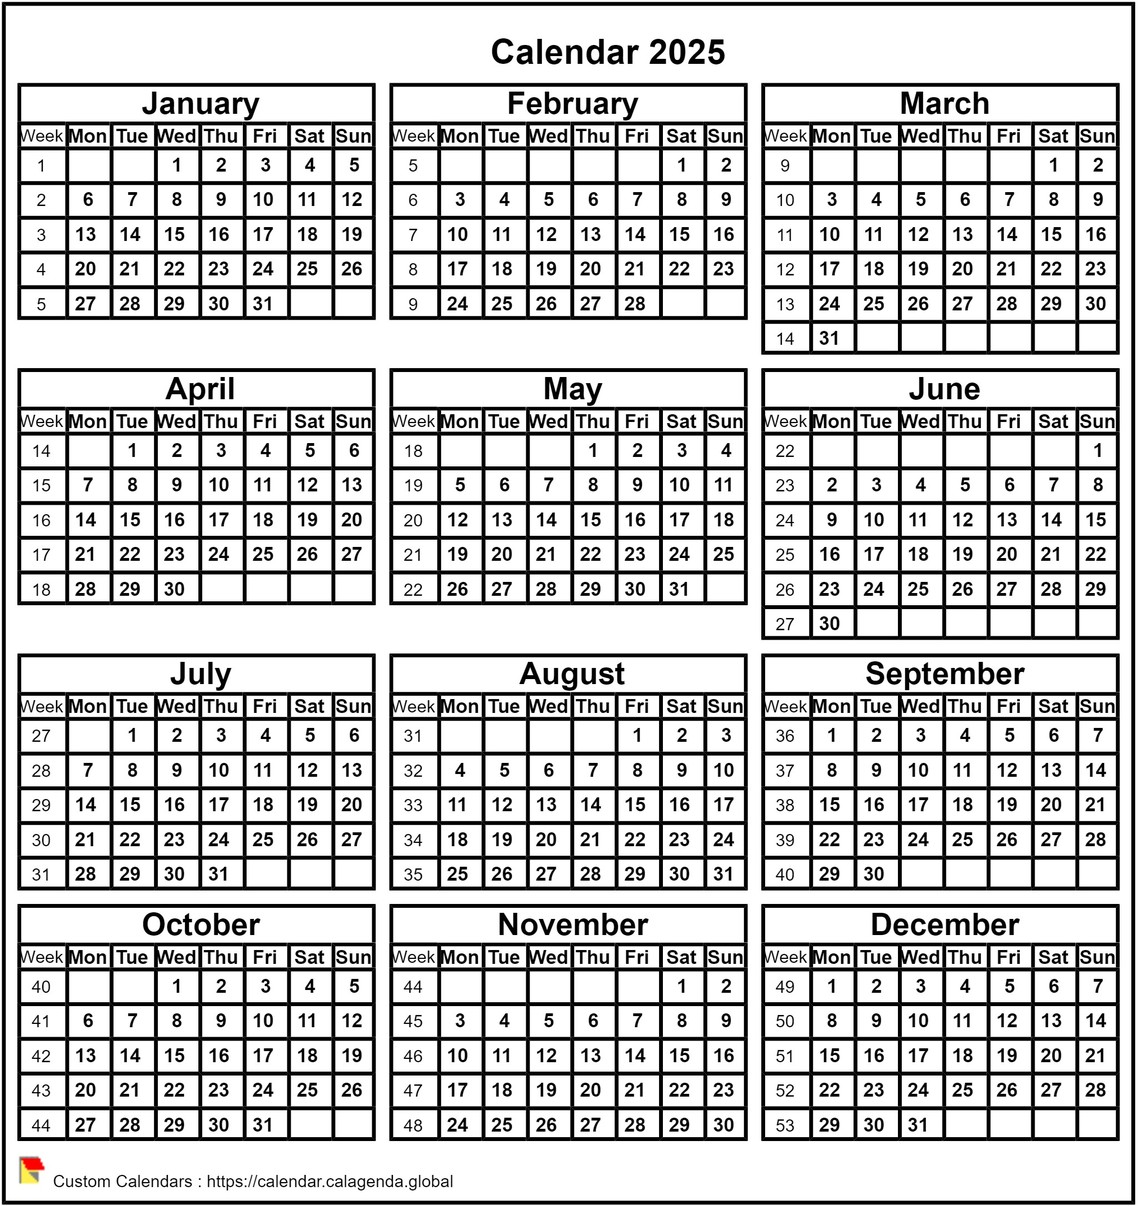 Calendar 2025 format portrait